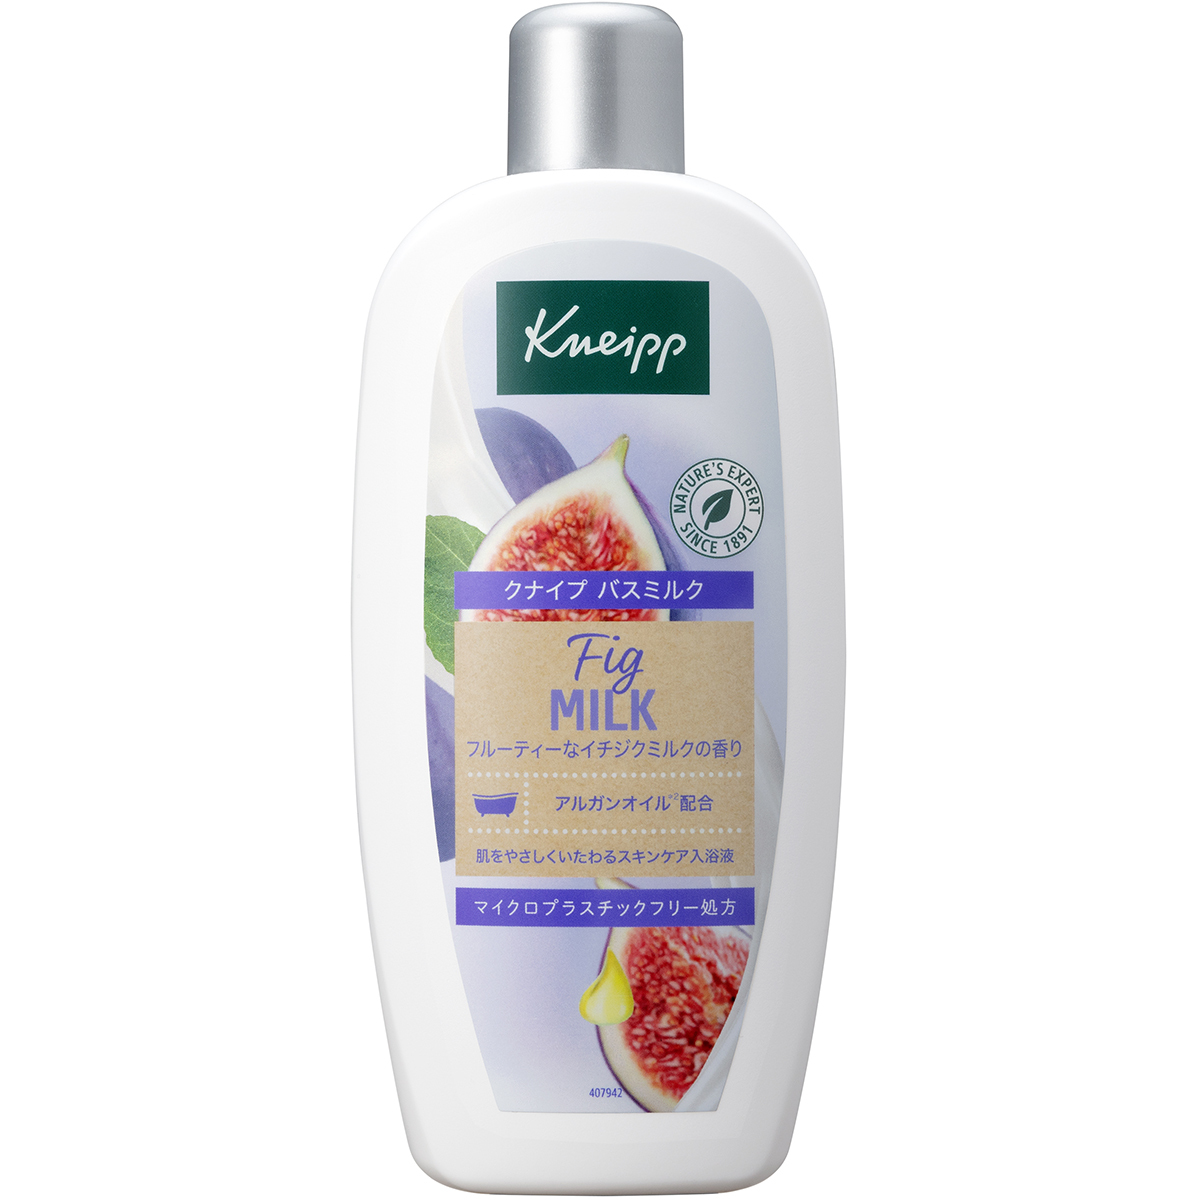 KNEIPP バスミルク イチジクミルクの香り 本体 480ml ×1 浴用入浴剤の商品画像